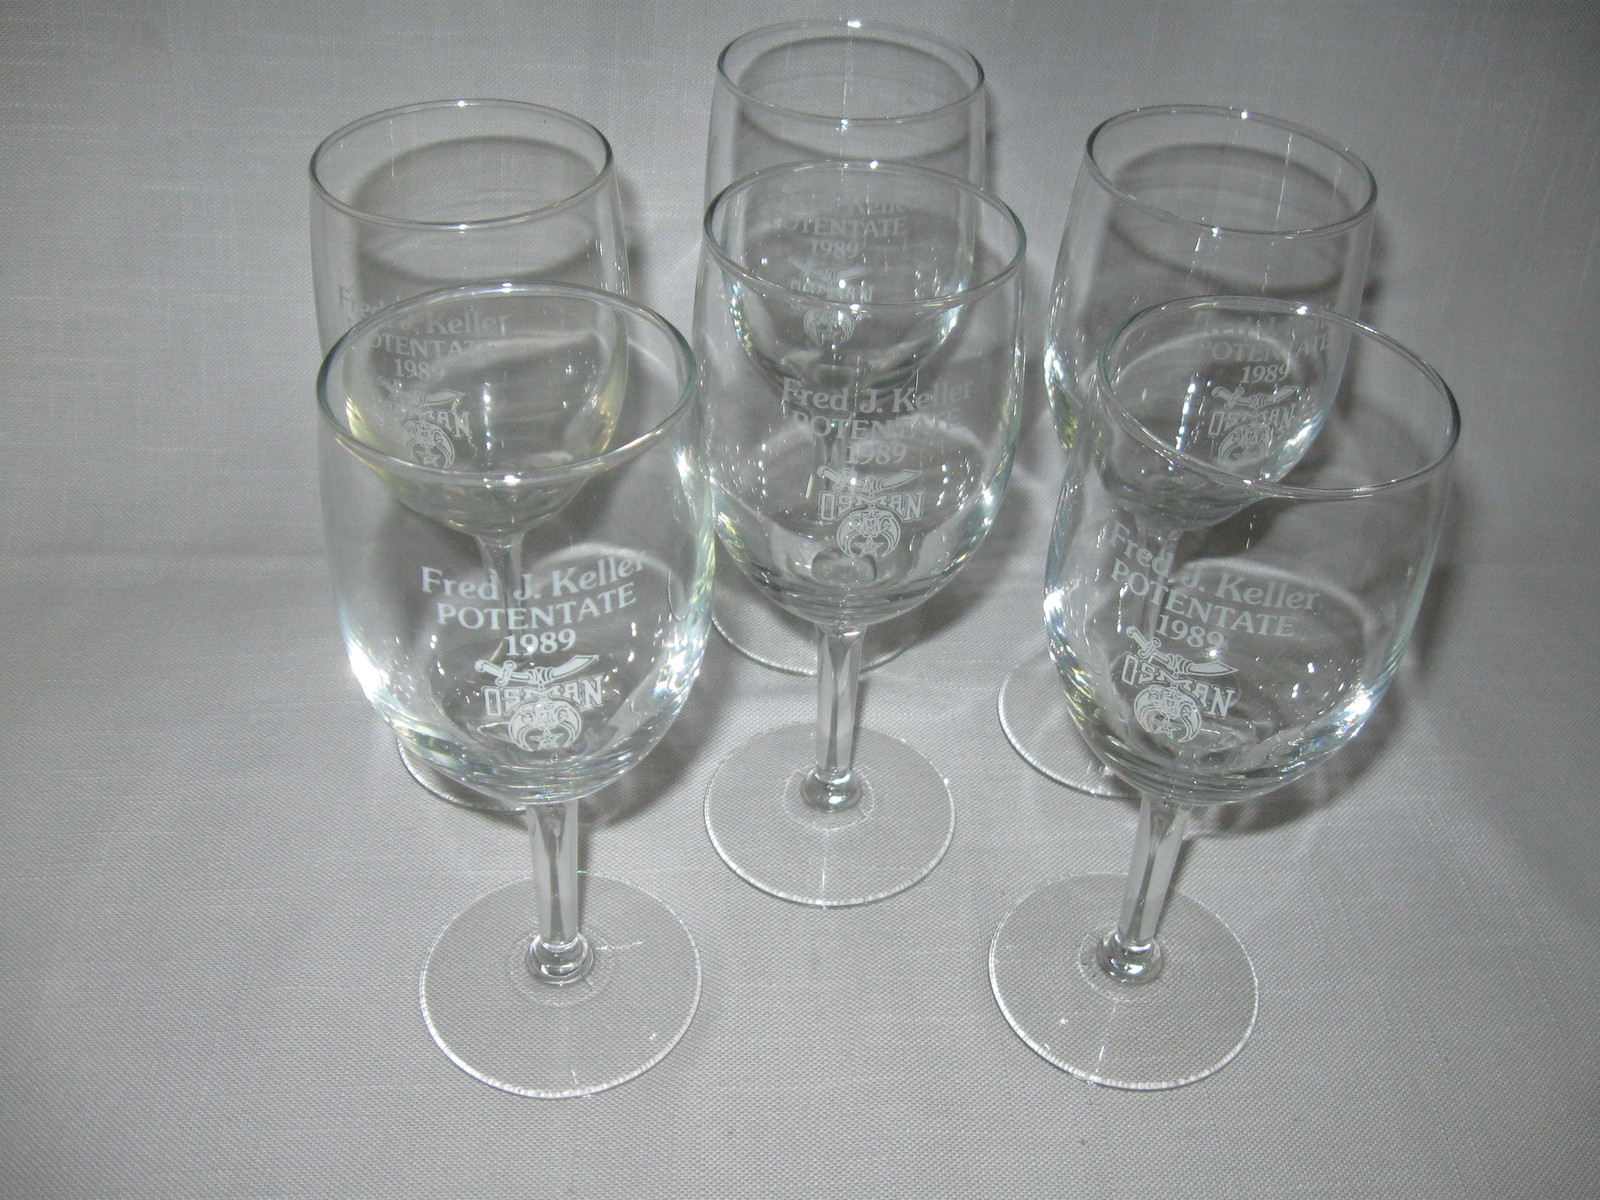 Crystal Clear Stem Wine Goblets Qty 6 Potentate Fred J Keller Osman Shrine 1989 - $16.95